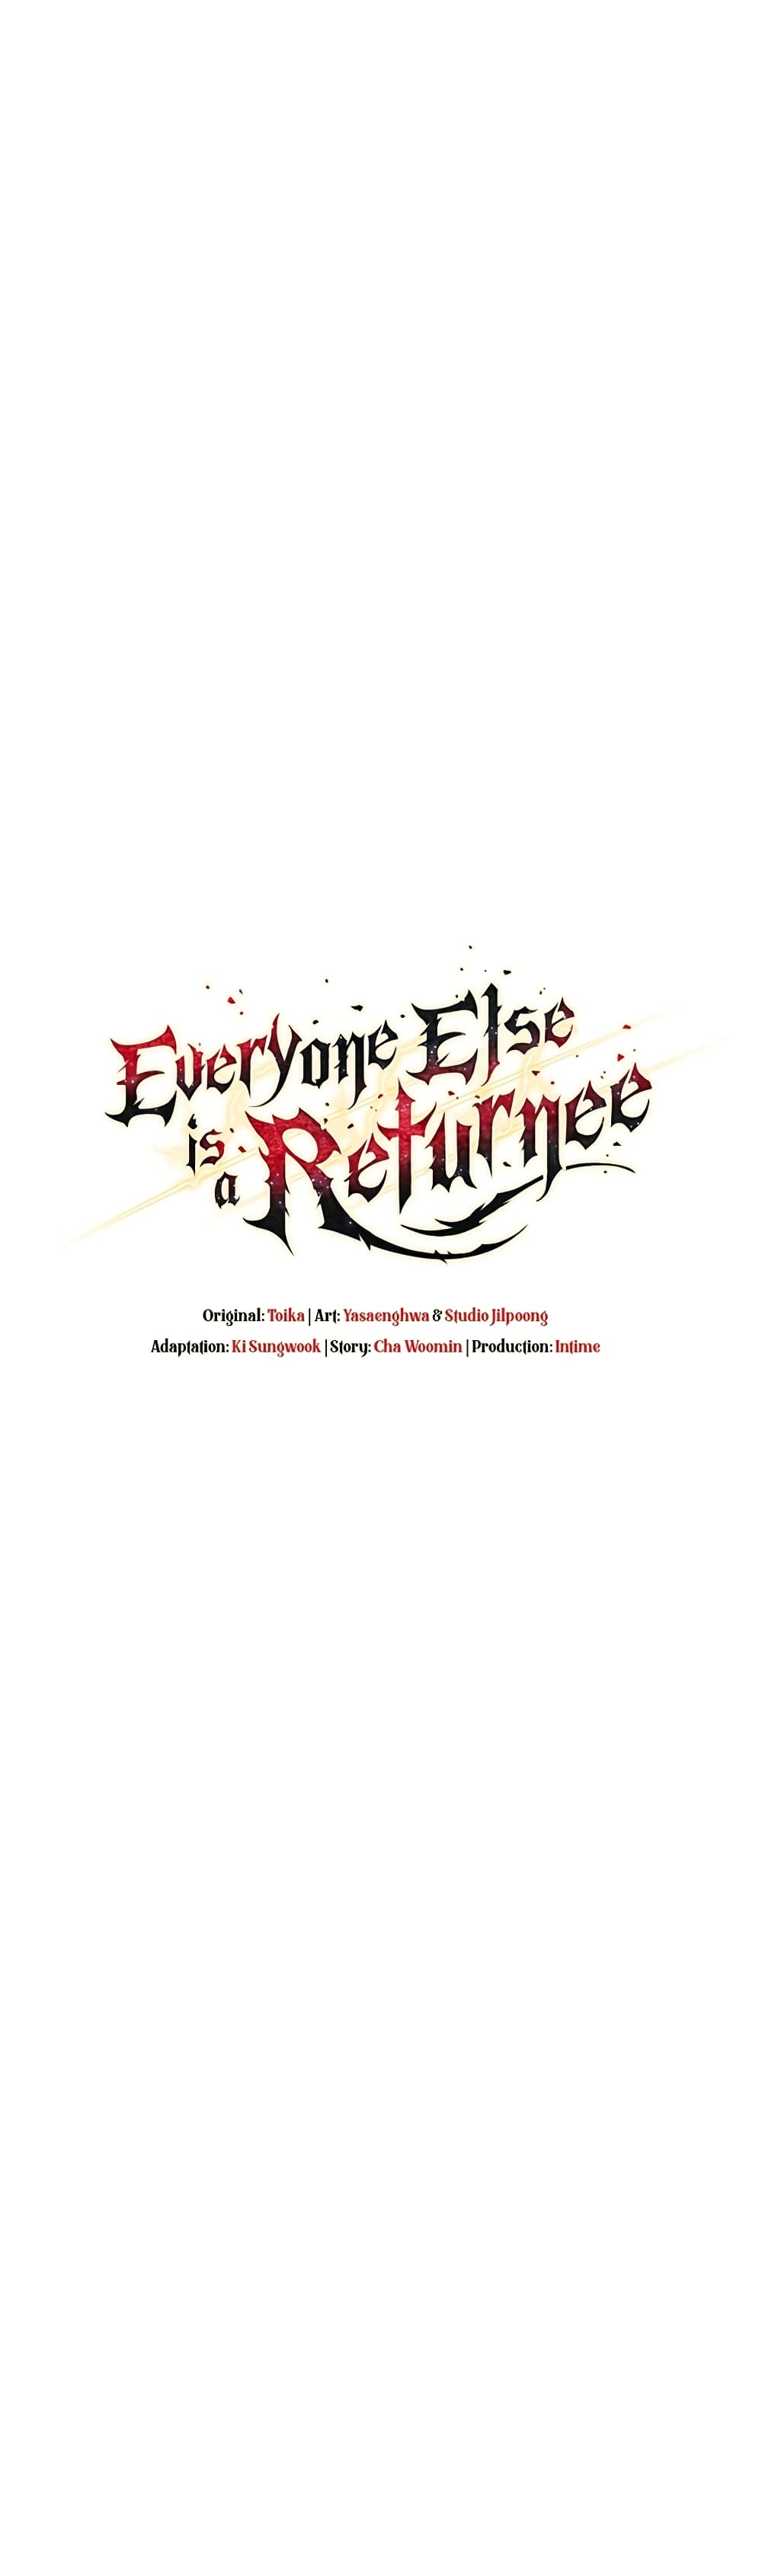 Everyone Else is A Returnee 14-14